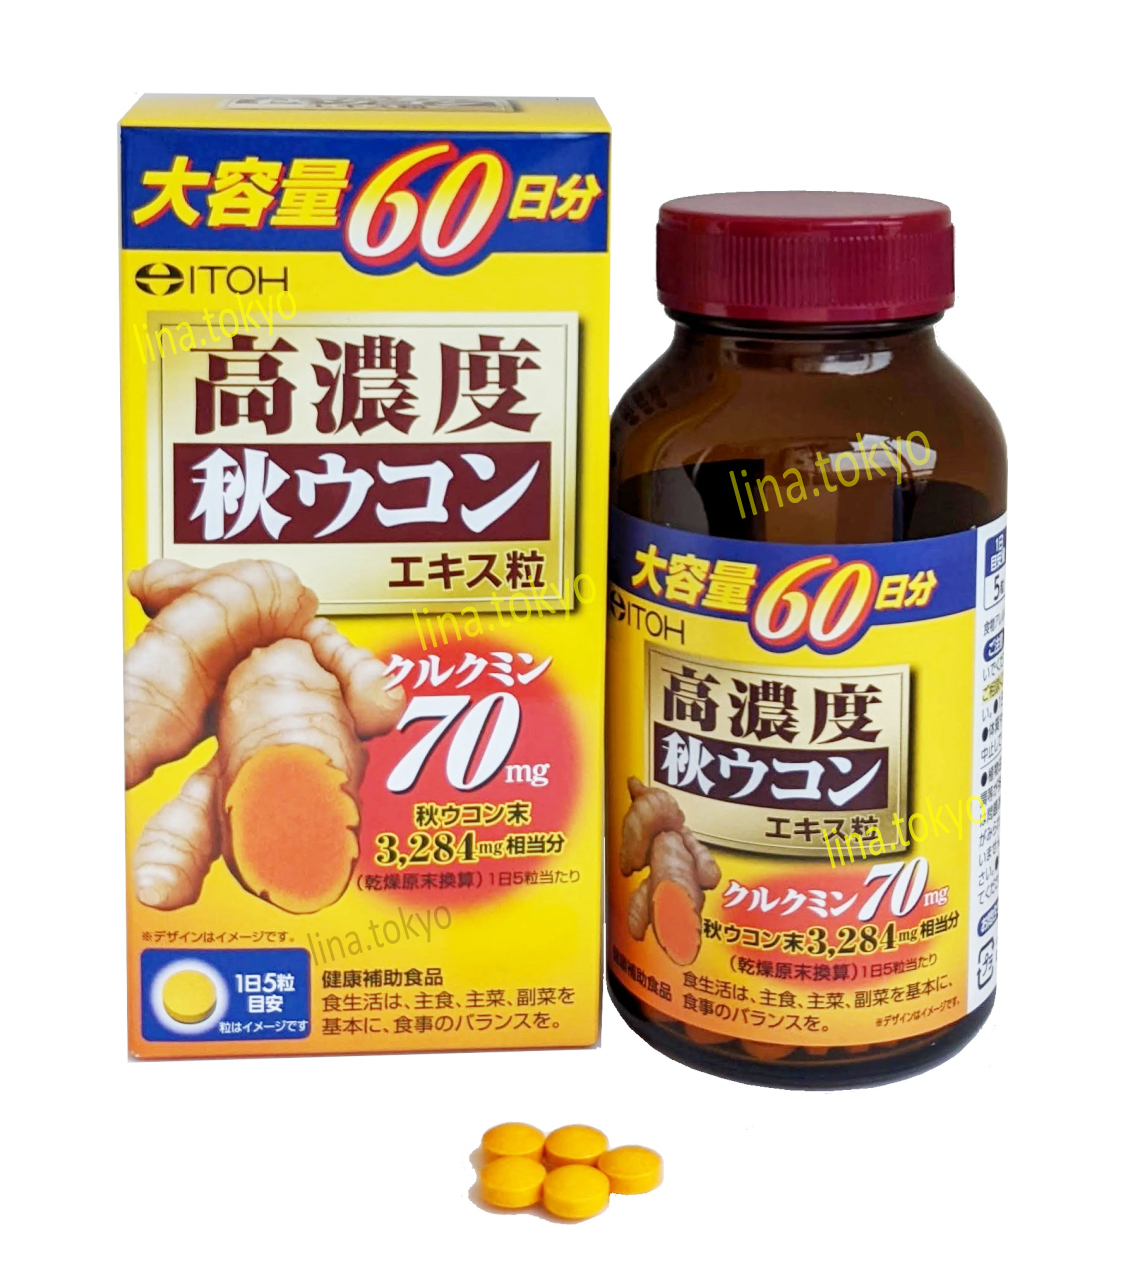 Viên uống bột nghệ nhật bản Itohkampo 60 ngày giúp giải rượu, phục hồi sức khoẻ, kiểm soát bệnh dạ dày, tăng cường hệ miễn dịch 300 viên (N30063) (Miễn phí giao hàng)